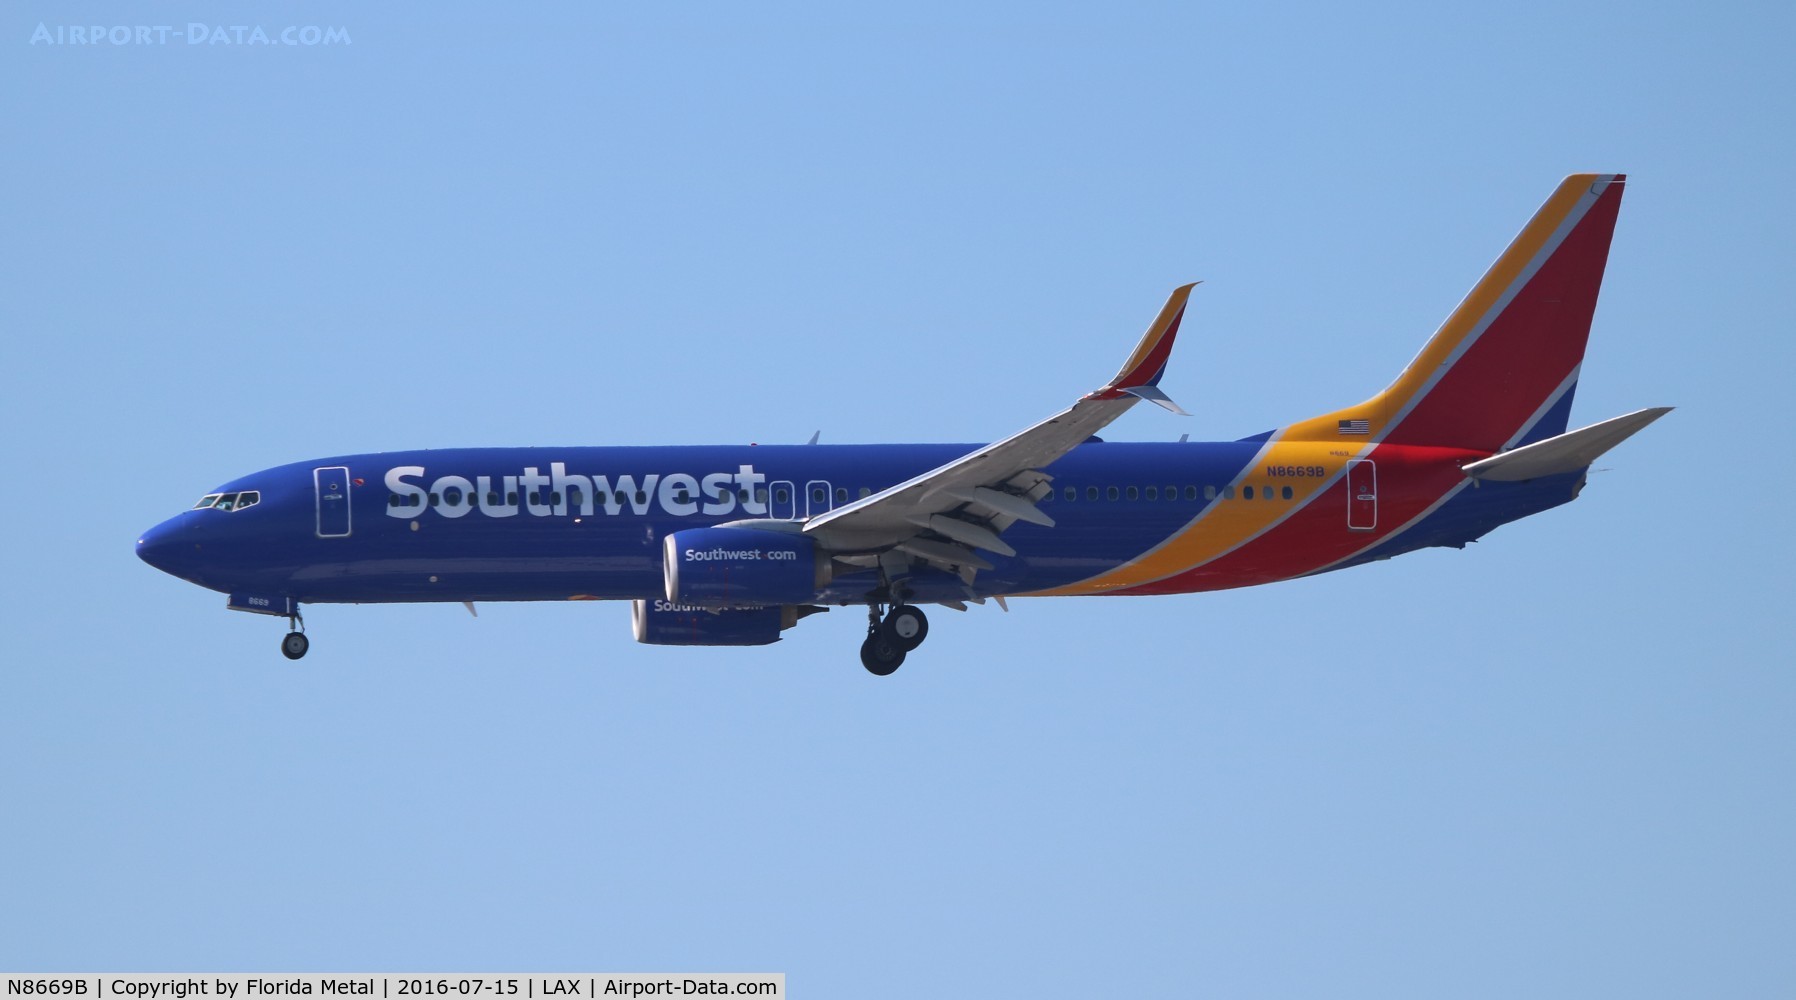 N8669B, 2015 Boeing 737-8H4 C/N 36655, Southwest